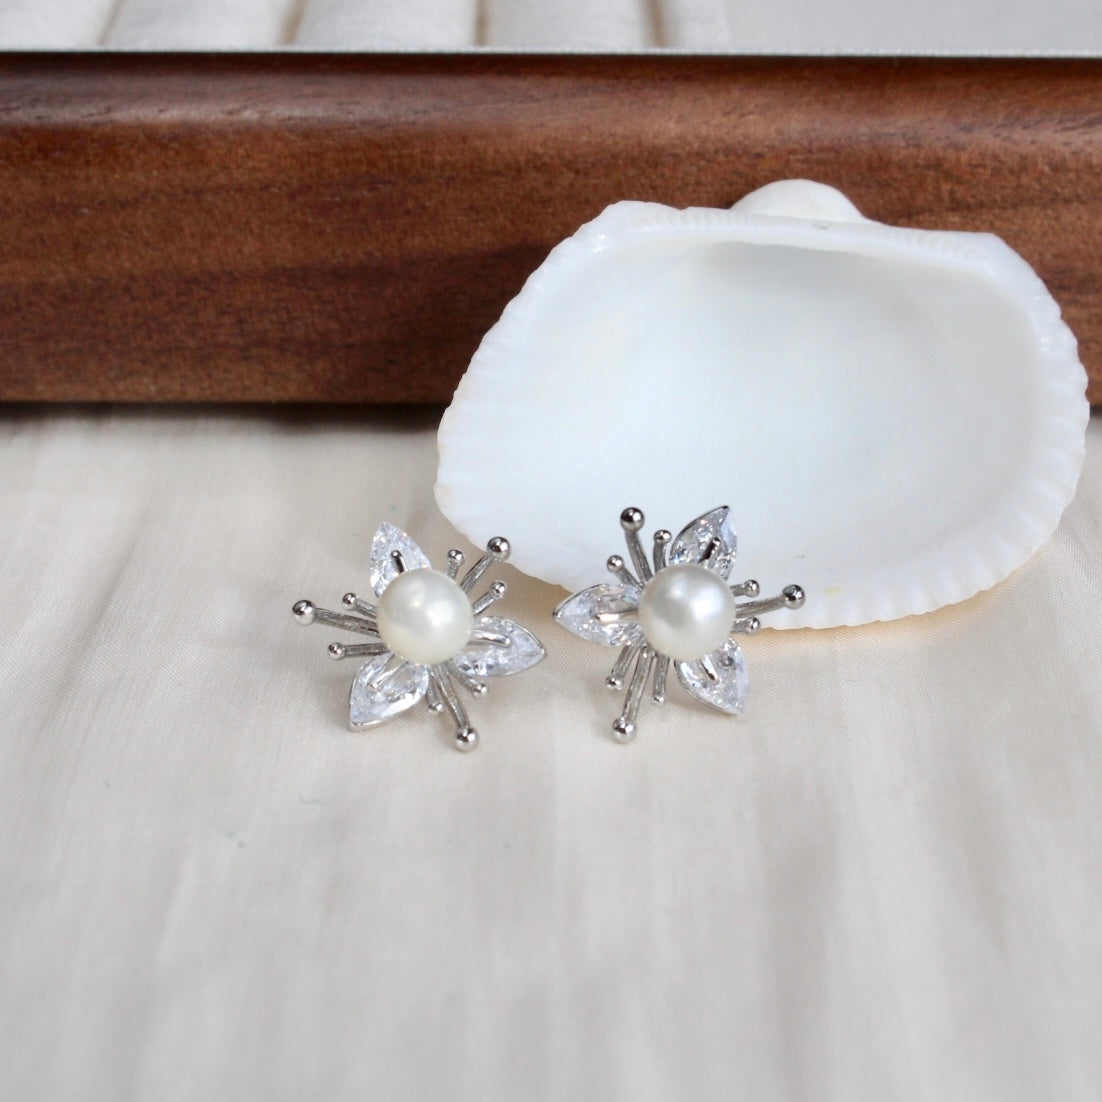 Everly｜Blühende Blume mit Perle - JK Jewelry & Accessories